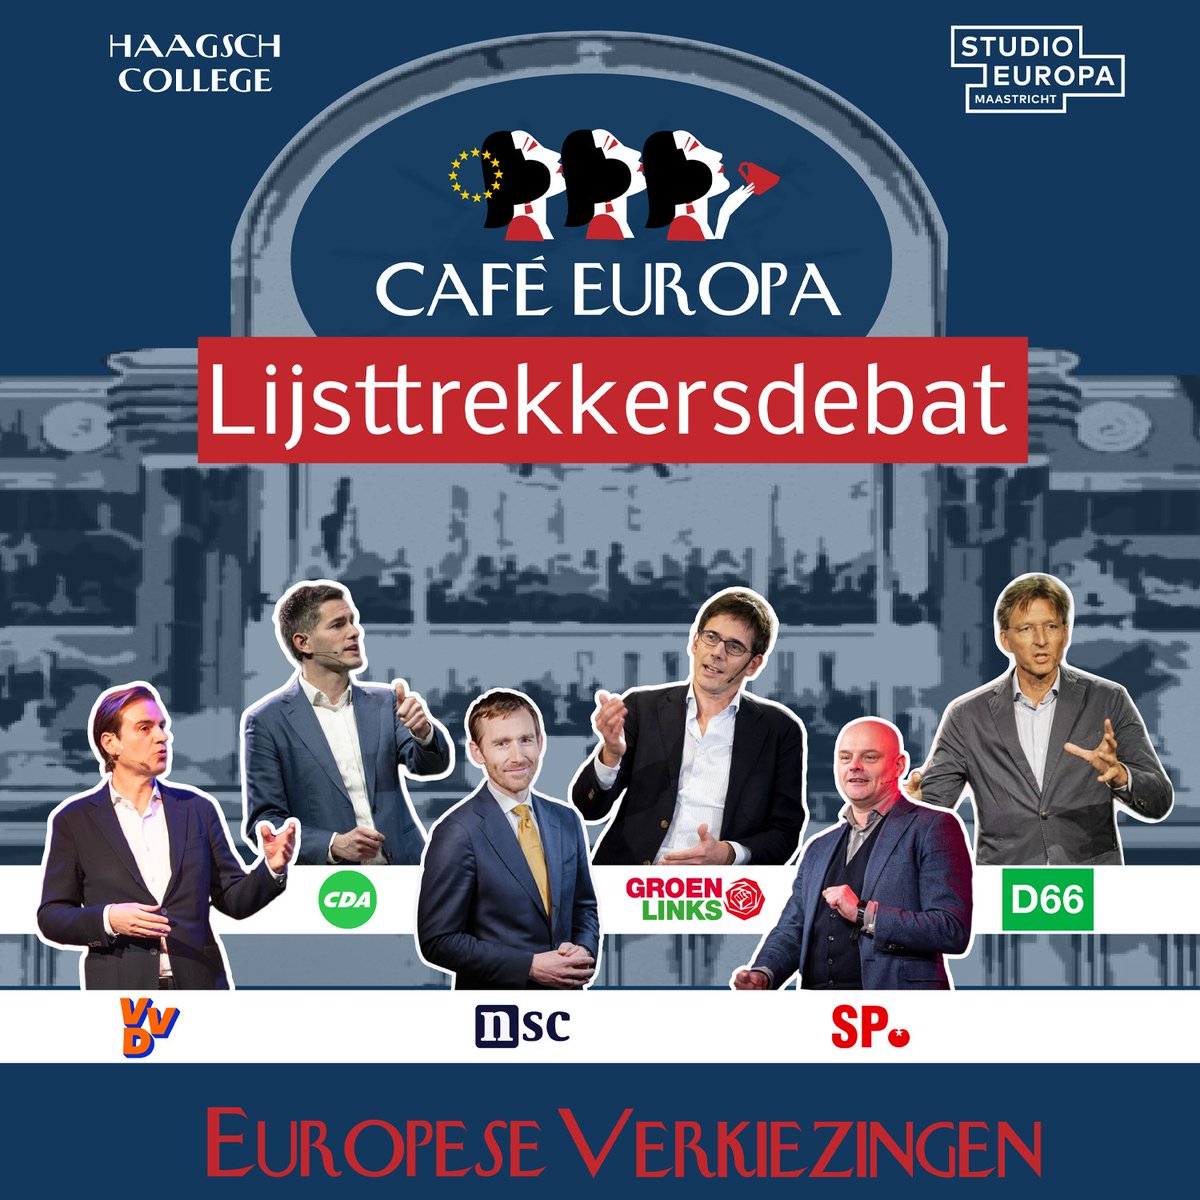 🇪🇺Het Café Europa Lijsttrekkersdebat Volgende week vrijdag 15 uur @nieuwspoort Met: @MalikAzmani, @tbwberendsen, @DirkGotink, @BasEickhout, @GerrieElfrink & @Gerbrandy Olv @annettevansoest & Stefan de Vries Kom naar de opname of volg de livestream haagschcollege.nl/college/eudebat